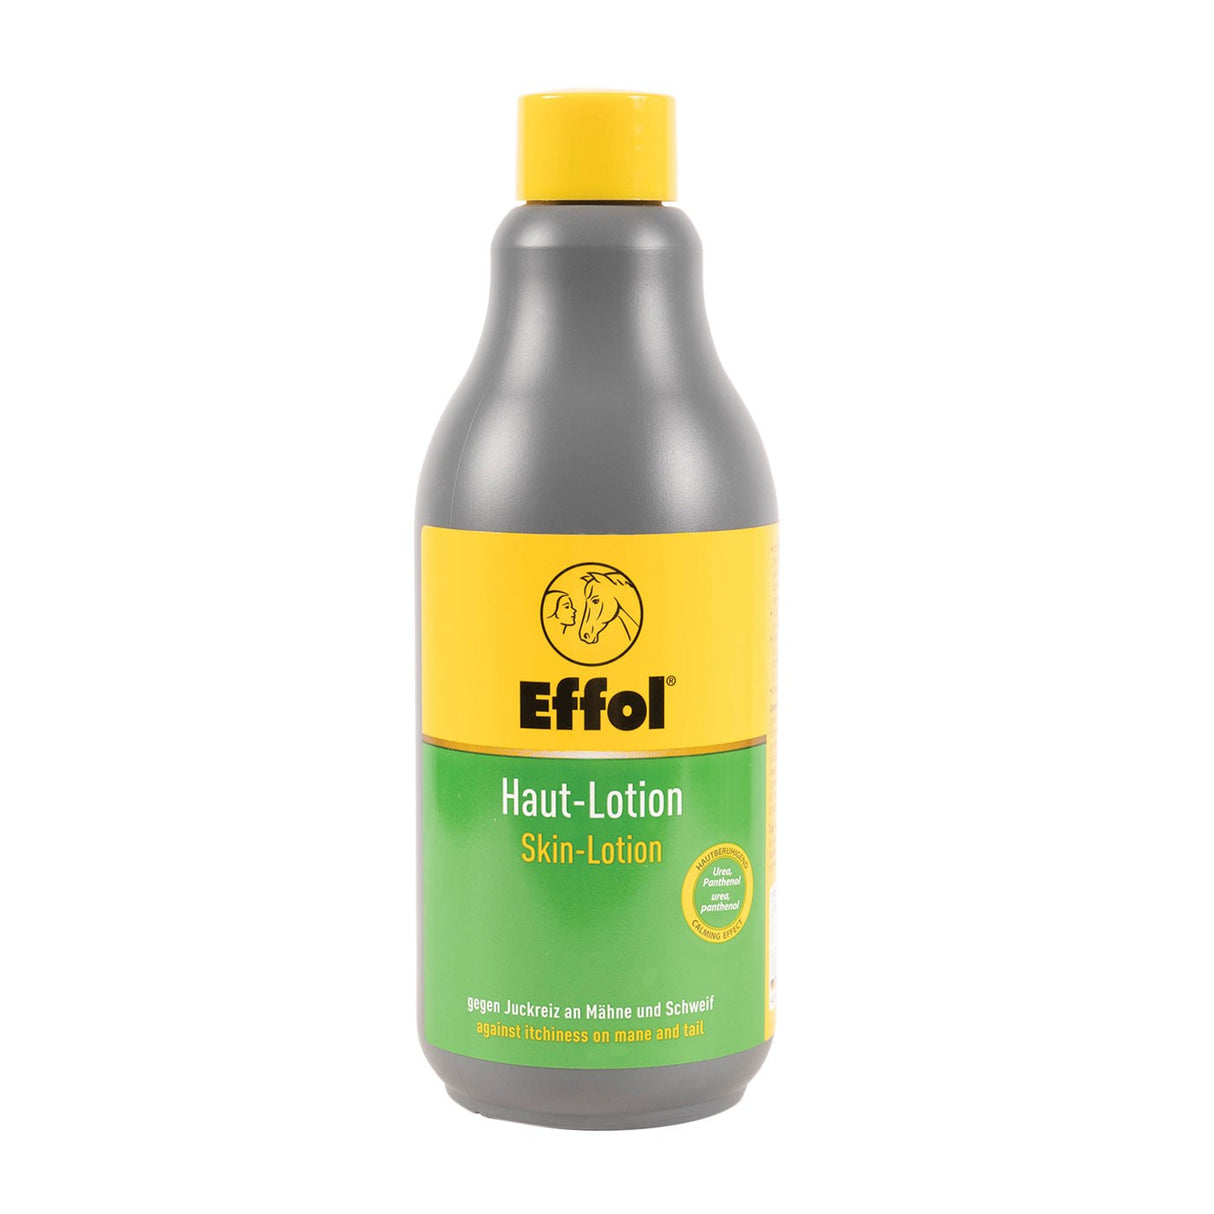 Effol Skin-Lotion 500 mL